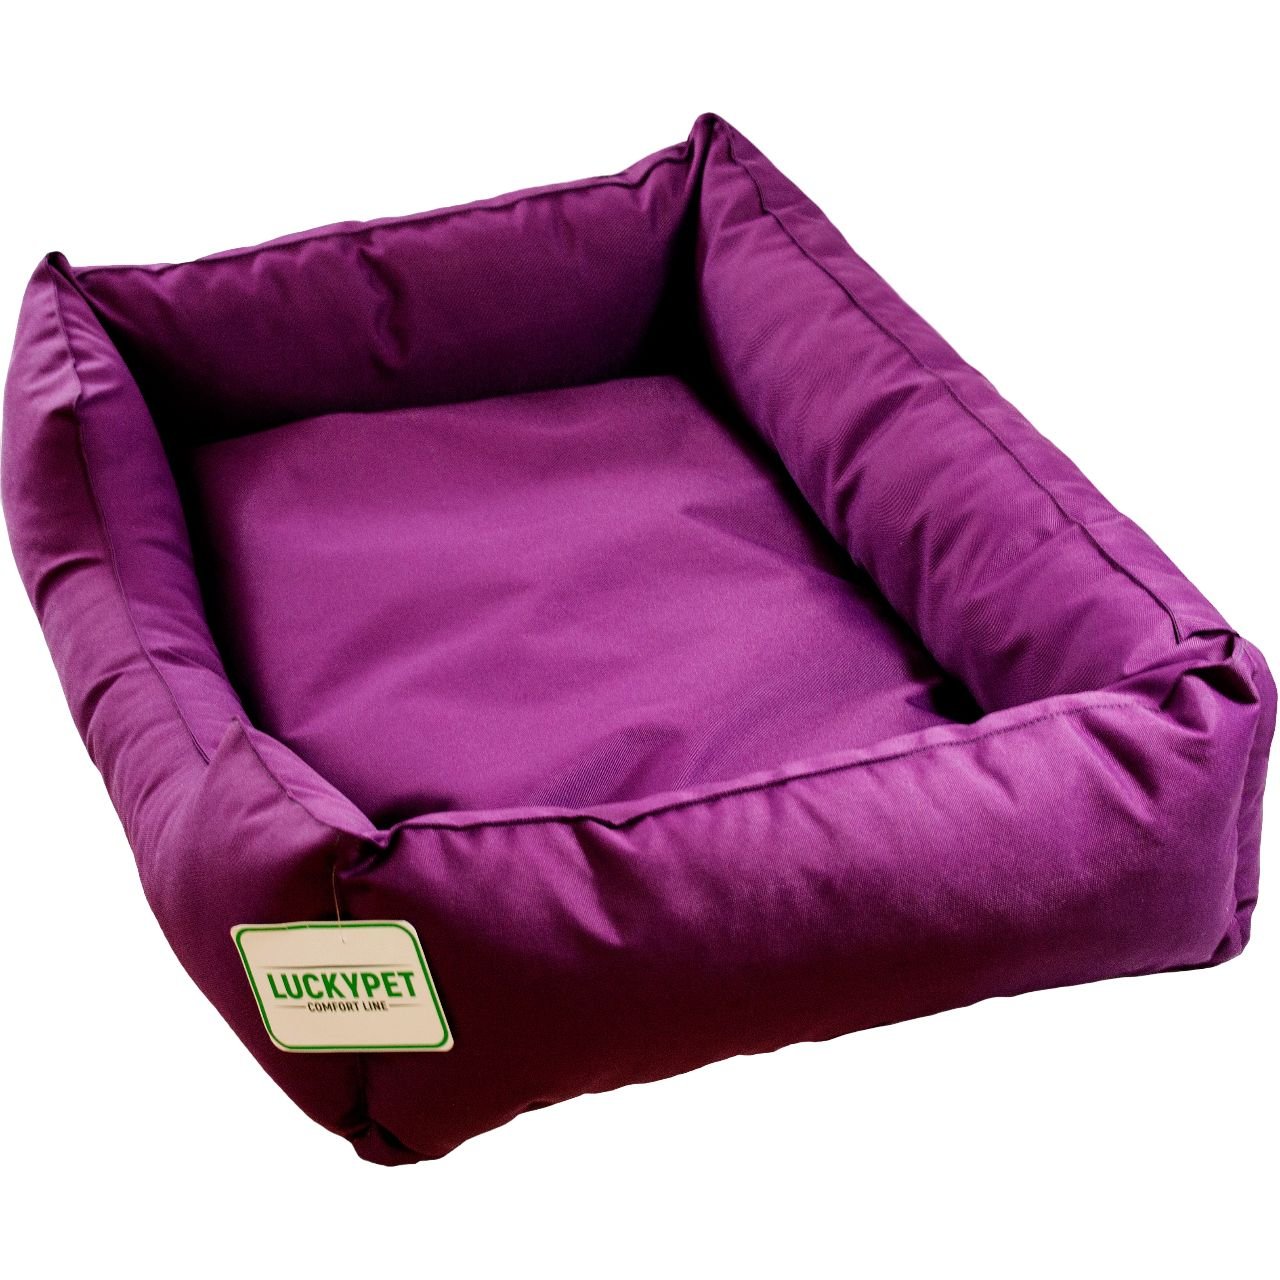 Лежак Lucky Pet Маркіз №4, 60x90x22 см, фіолетовий - фото 1